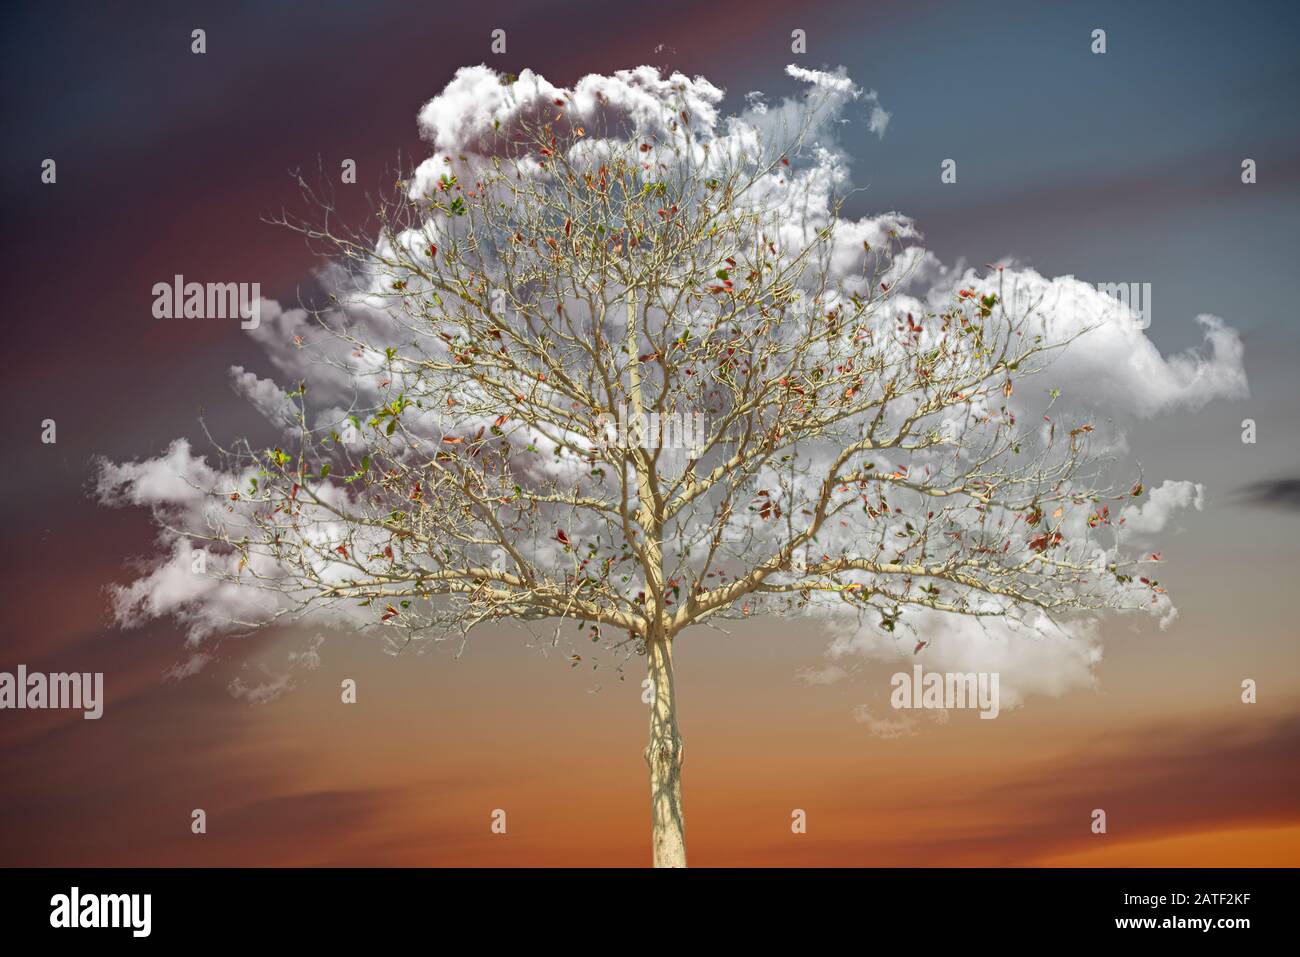 Nuage blanc en forme de couronne d'arbre derrière des branches nues en hiver ou en automne, capturé à faible angle contre le ciel sombre Banque D'Images